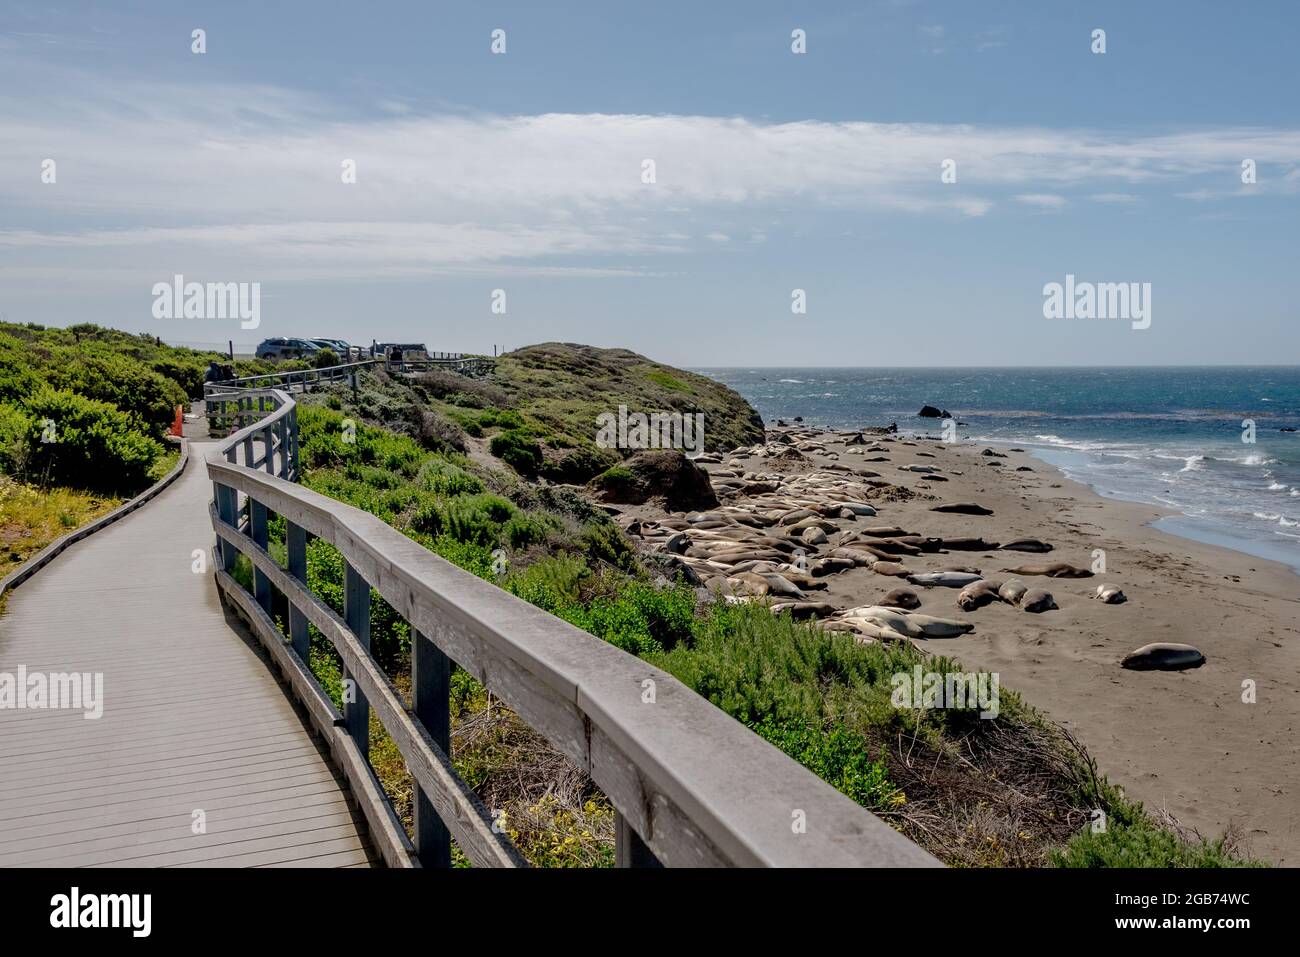 Der Elephant Seal vista Trail mit Promenade mit Blick auf die Elefantenrobben der Kolonie Piedras Blancas an der kalifornischen Zentralküste. Stockfoto